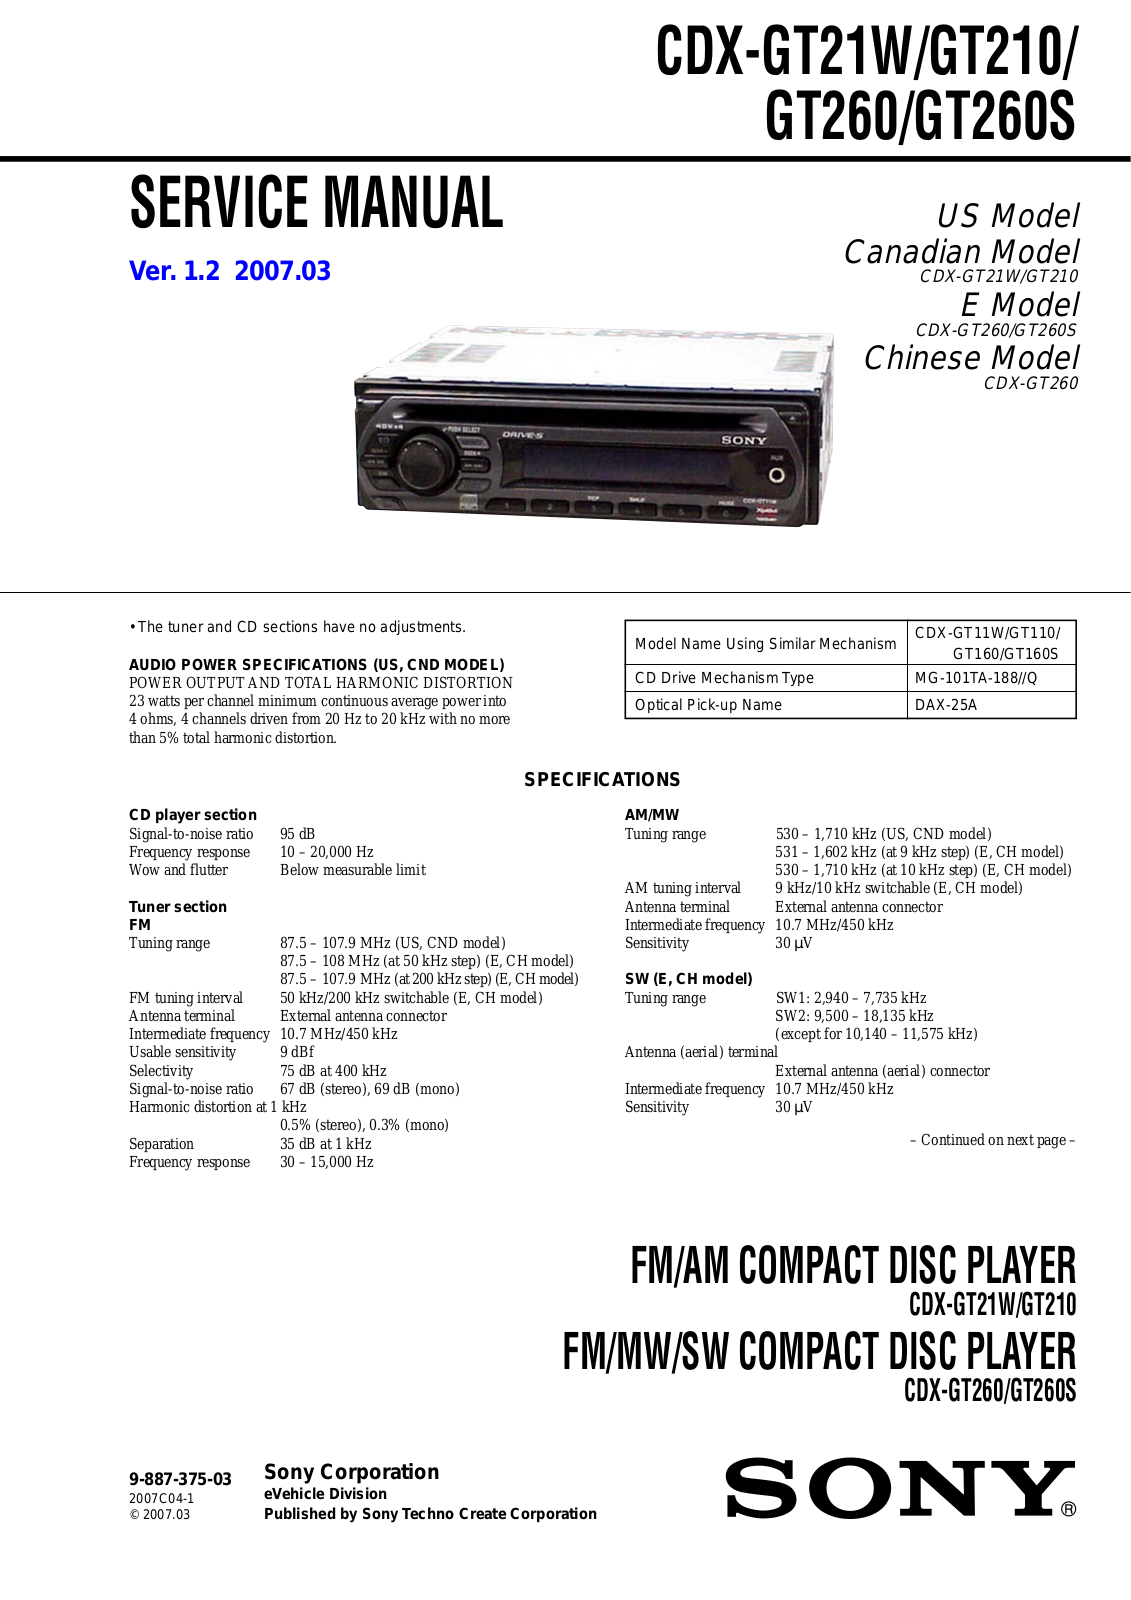 Sony CDX-GT21W, CDX-GT260S, CDX-GT260, CDX-GT210 User Manual 2